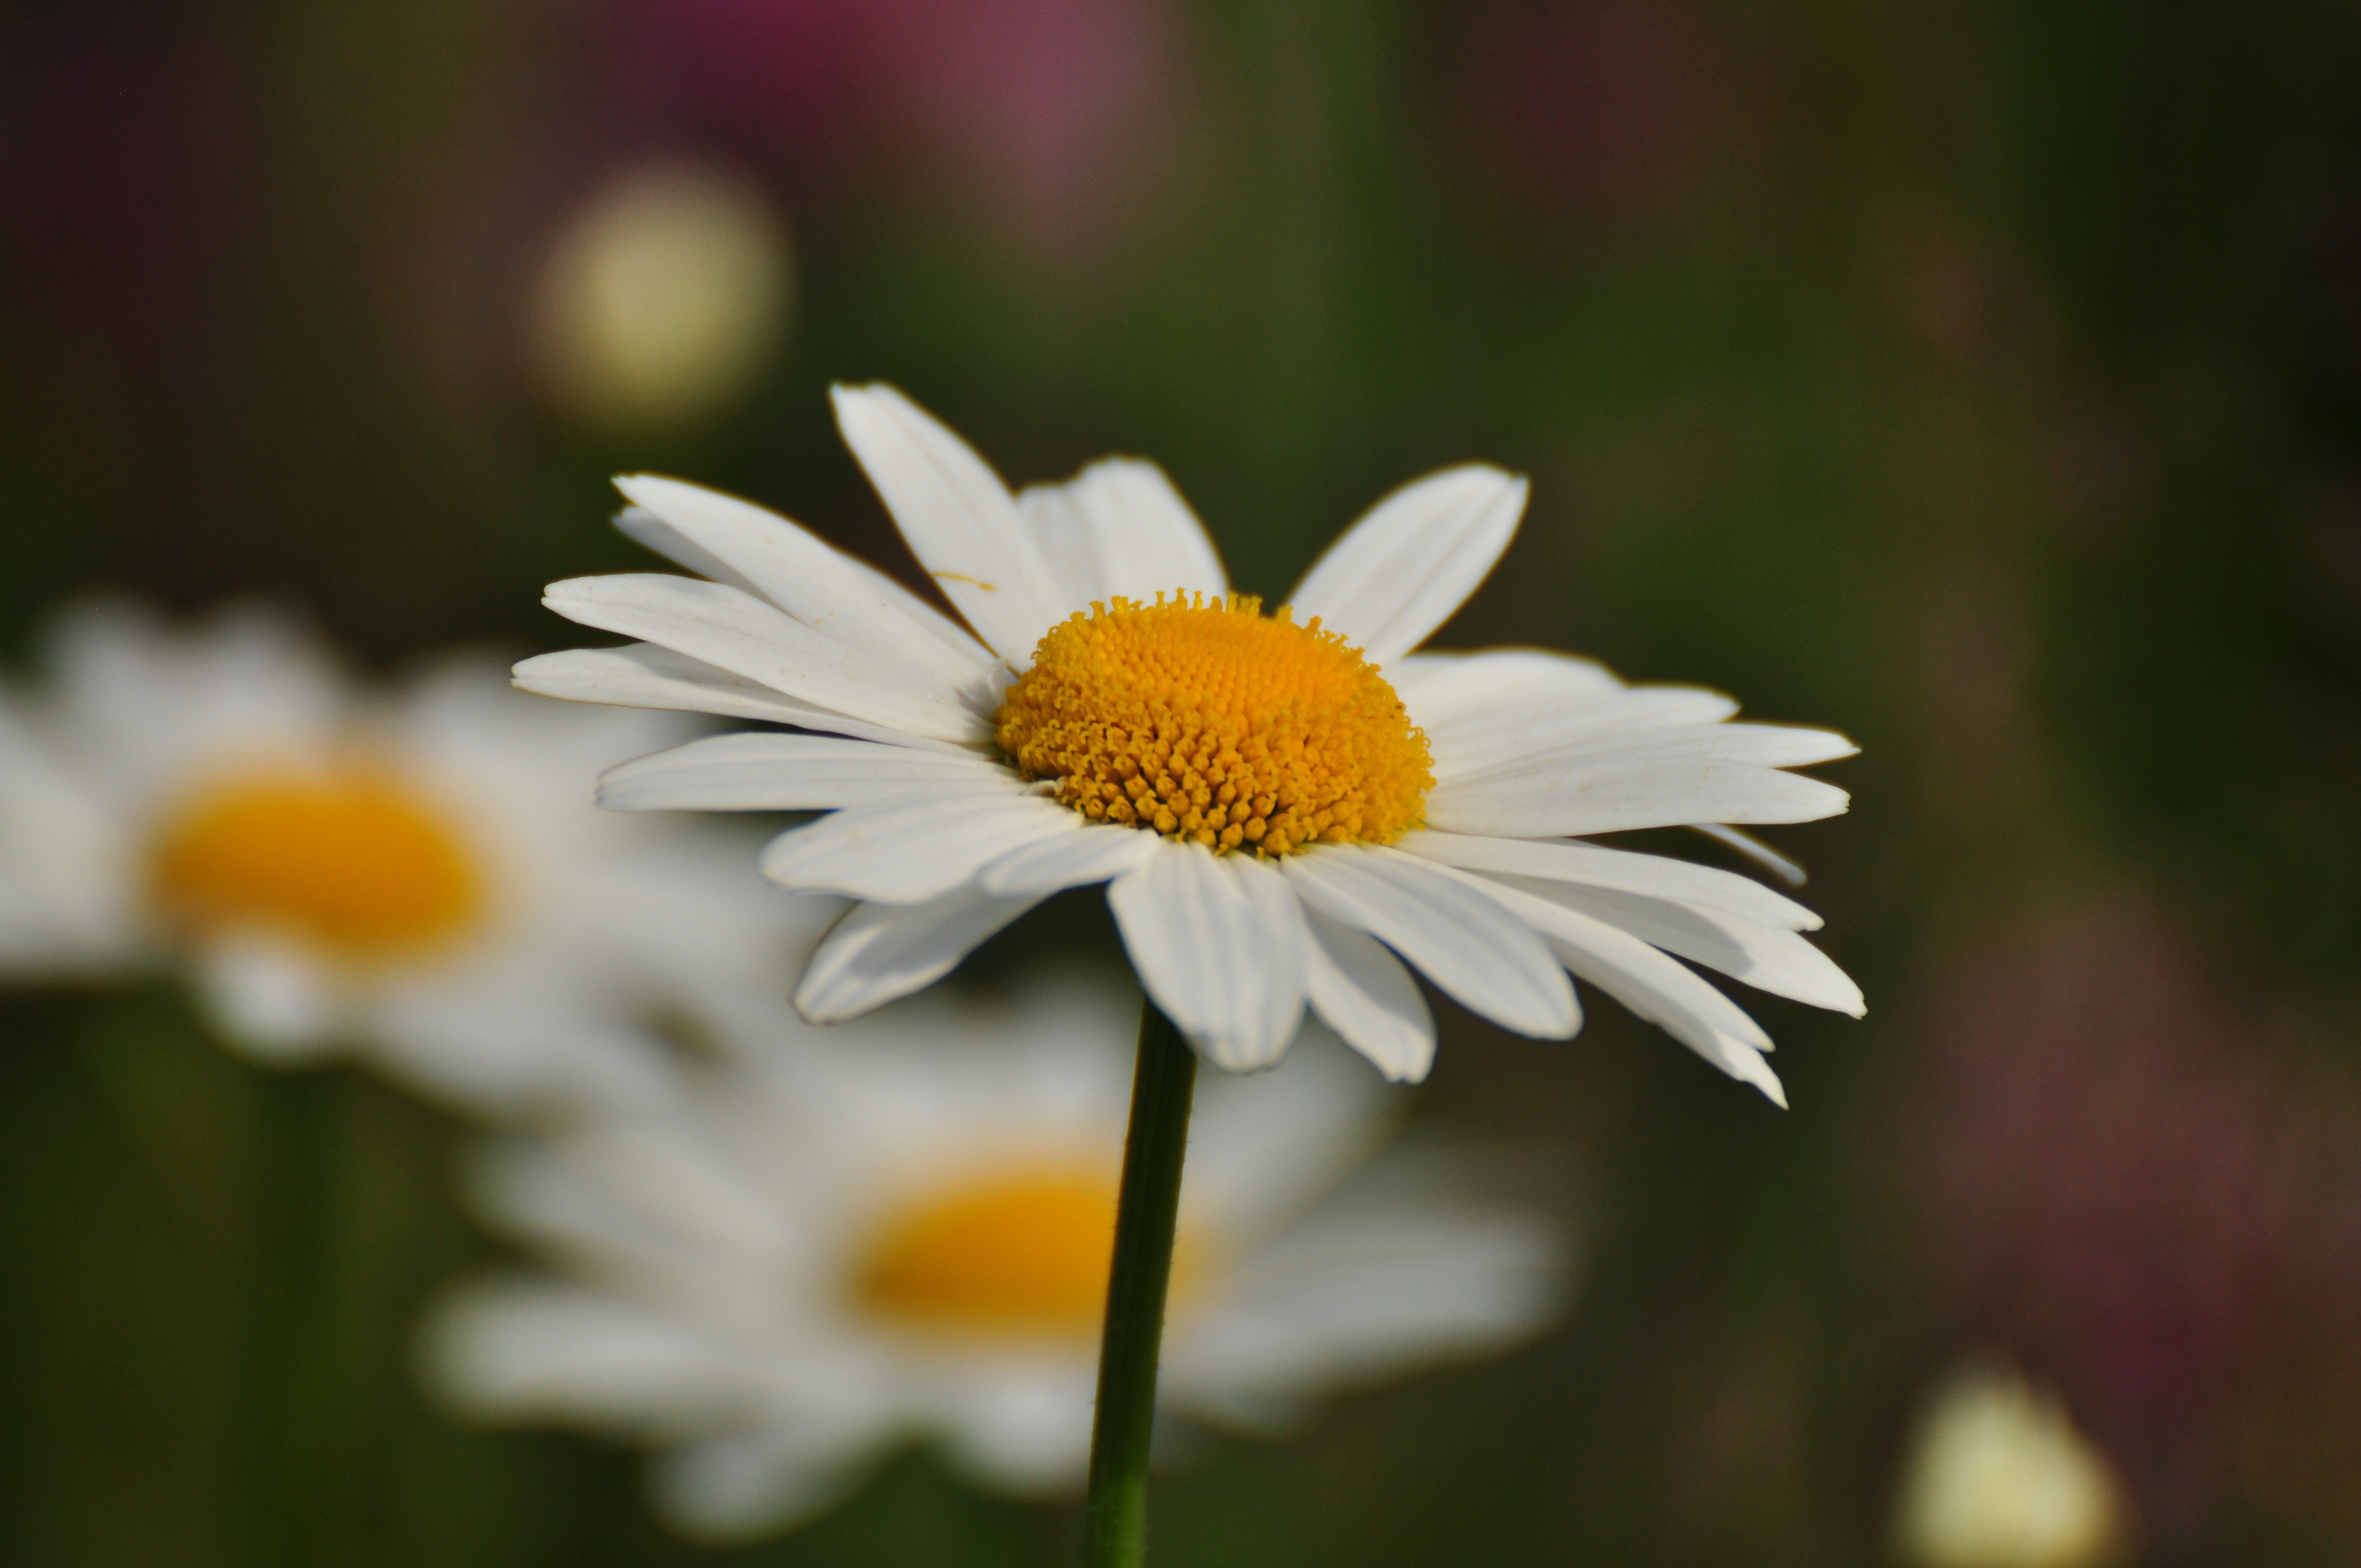 Flower, Daisy, flower, petal